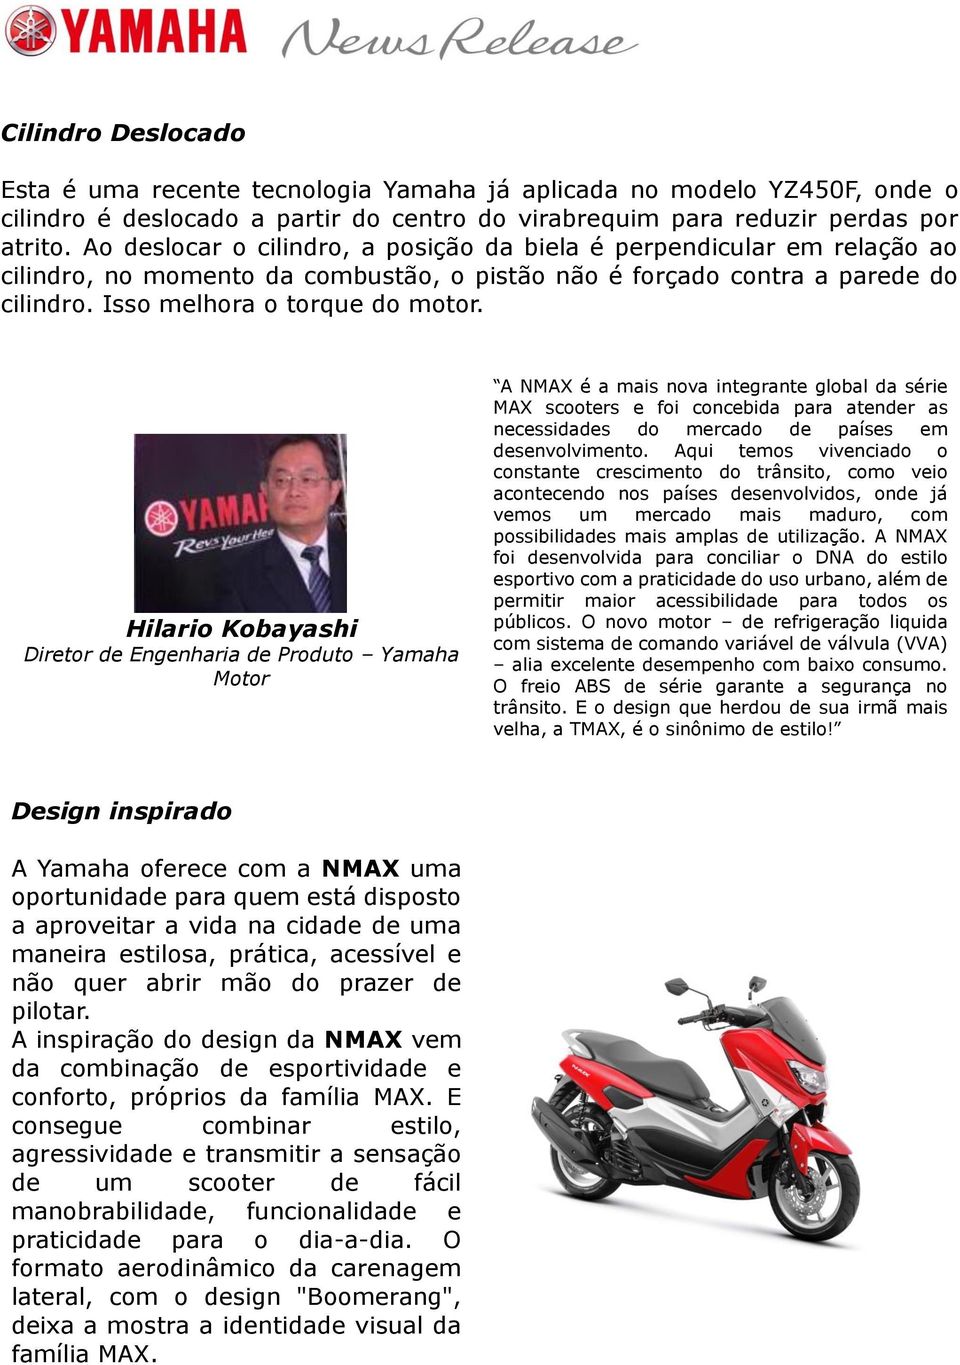 Hilario Kobayashi Diretor de Engenharia de Produto Yamaha Motor A NMAX é a mais nova integrante global da série MAX scooters e foi concebida para atender as necessidades do mercado de países em